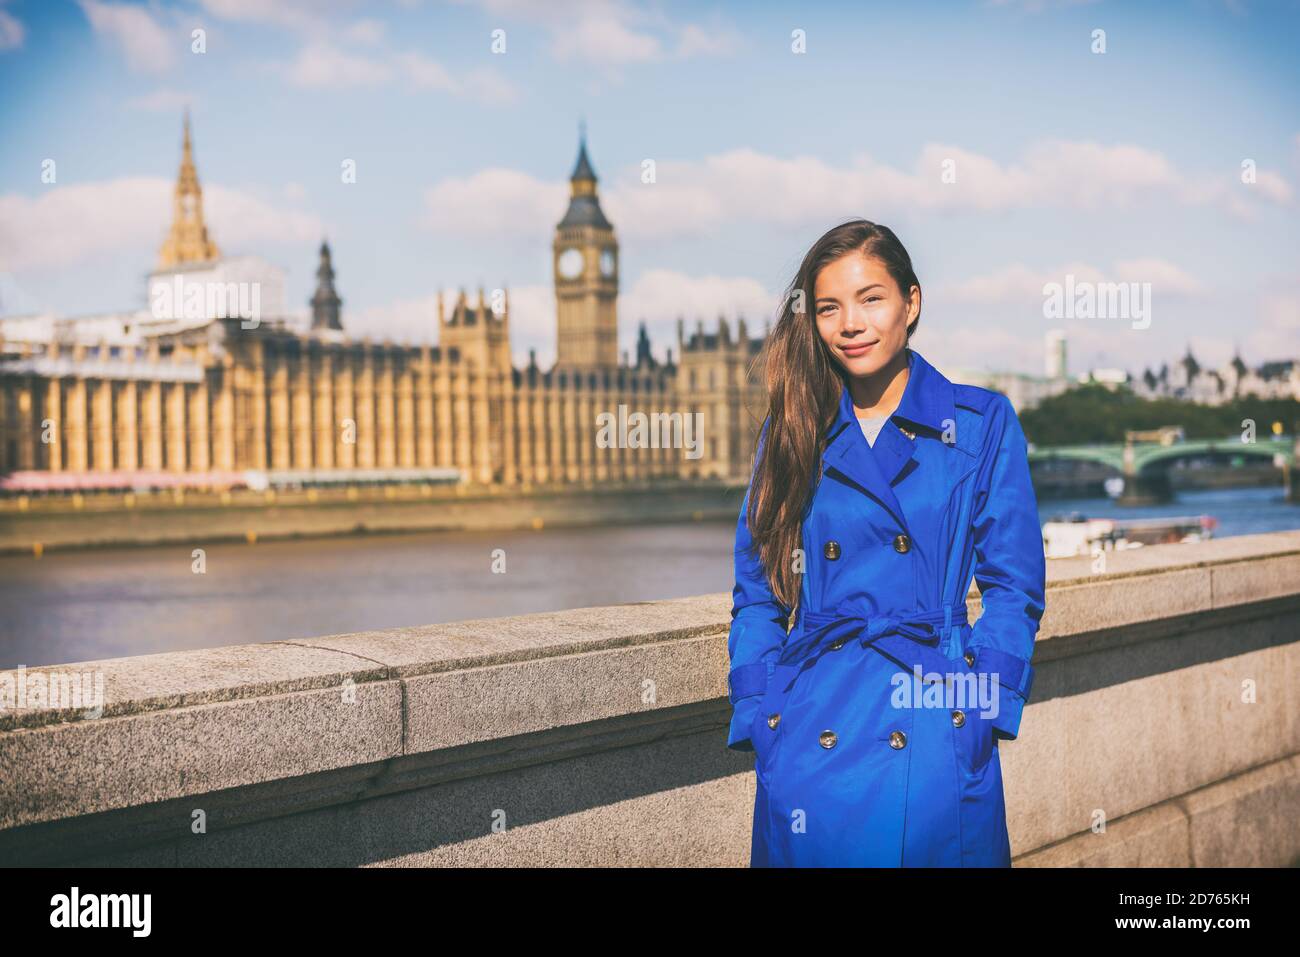 London Frau europäische Stadt Reisende in blauen Trenchcoat Oberbekleidung an berühmten britischen Reiseziel, Westminster Big Ben an der Themse. Urlaub in Europa Stockfoto